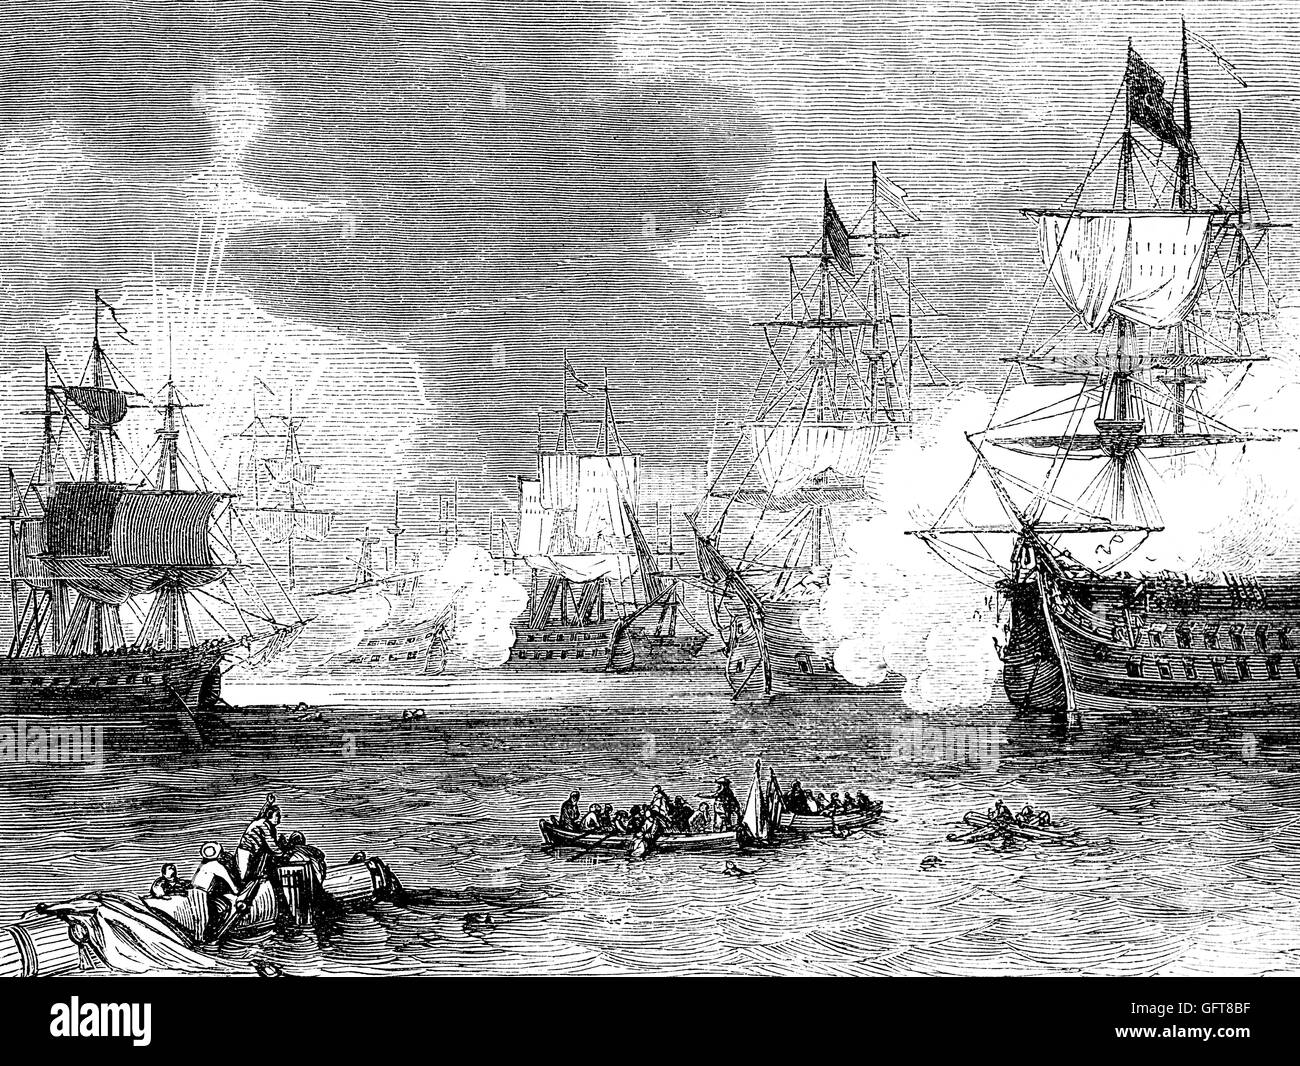 La bataille de Navarin est battu le 20 octobre 1827, durant la guerre d'Indépendance grecque dans la baie de Navarin (actuelle Pylos), sur la côte ouest de la péninsule du Péloponnèse, dans la mer Ionienne. Une force alliée des Britanniques, les Français et les navires russes a vaincu une armada de navires de guerre Ottoman, l'Egypte, Tunis et Alger. C'était la dernière grande bataille navale de l'histoire à s'être déroulée entièrement avec les bateaux à voile Banque D'Images